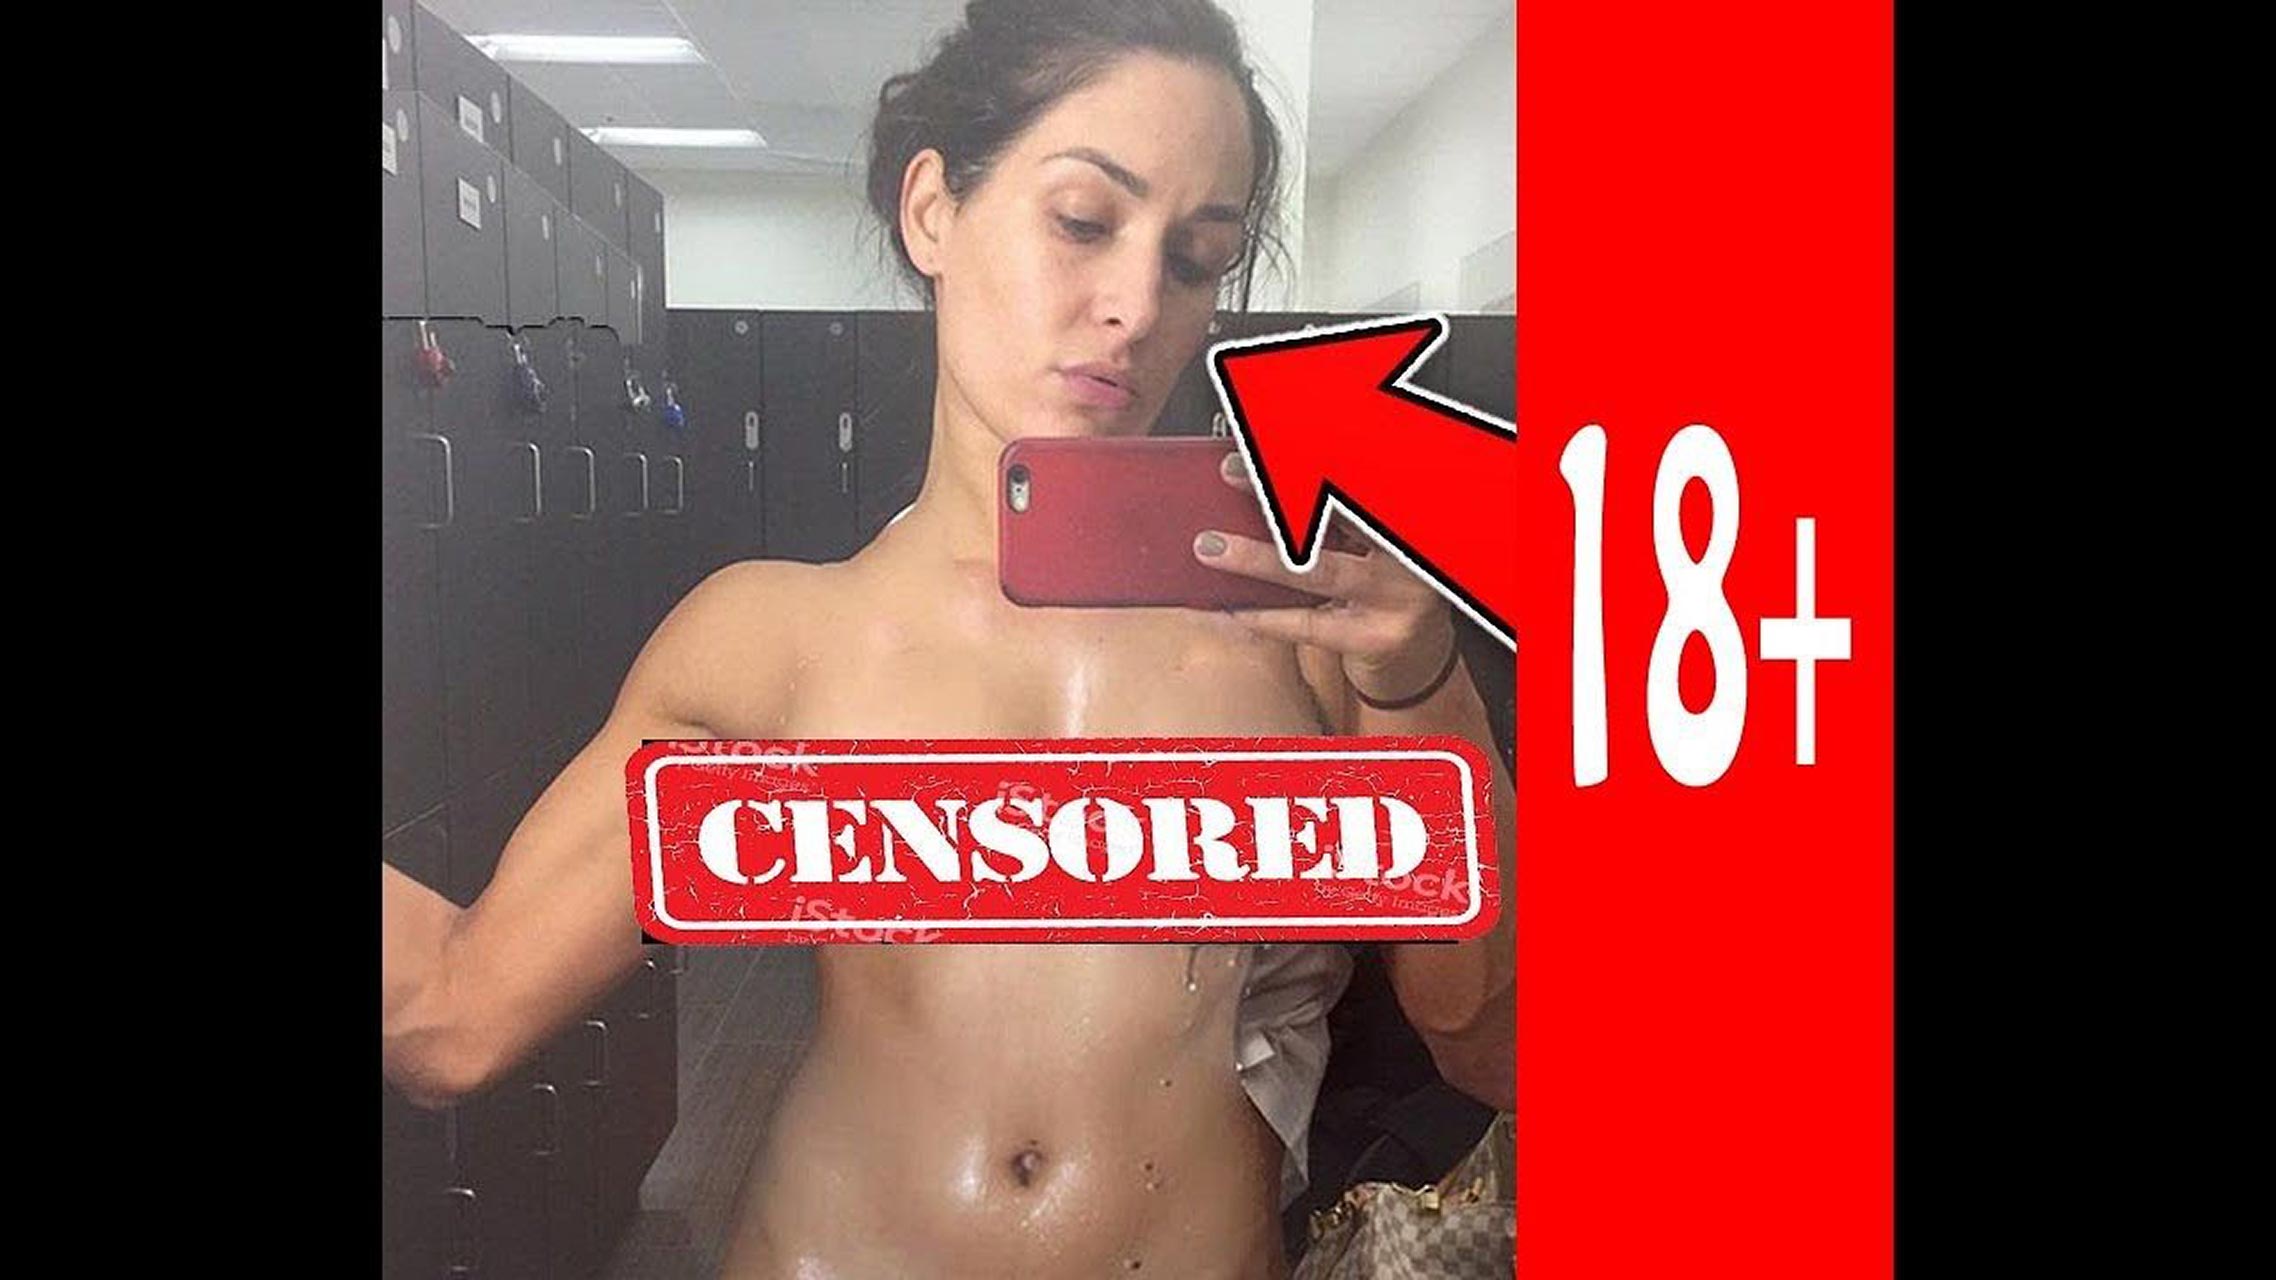 Nikki bella leaked nude photos